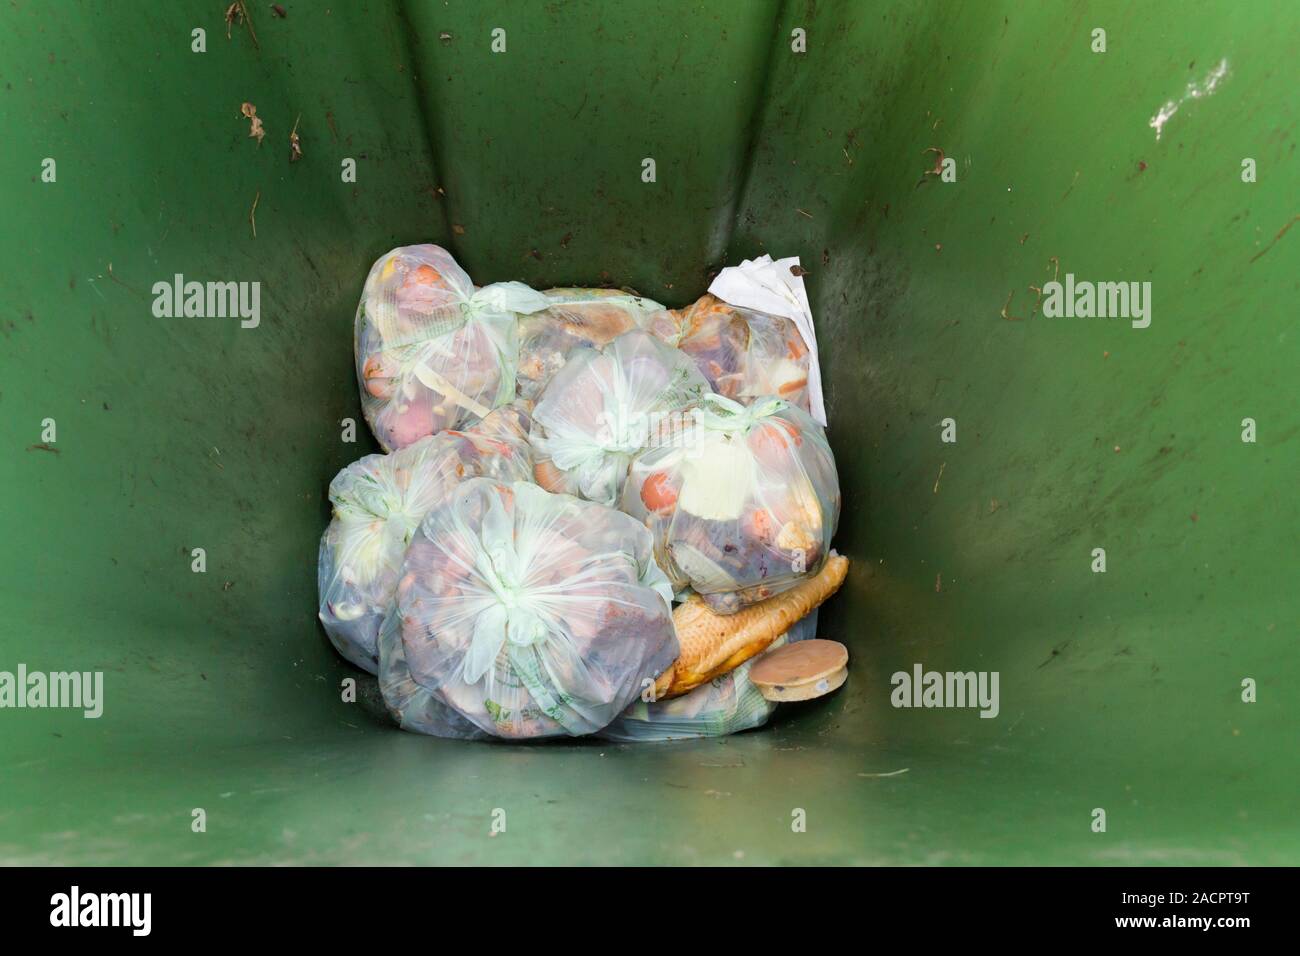 Reciclables, compostables los desperdicios de comida en bolsas compostables colocado en la parte inferior de un caballito verde bandeja de recolección en acera. Foto de stock